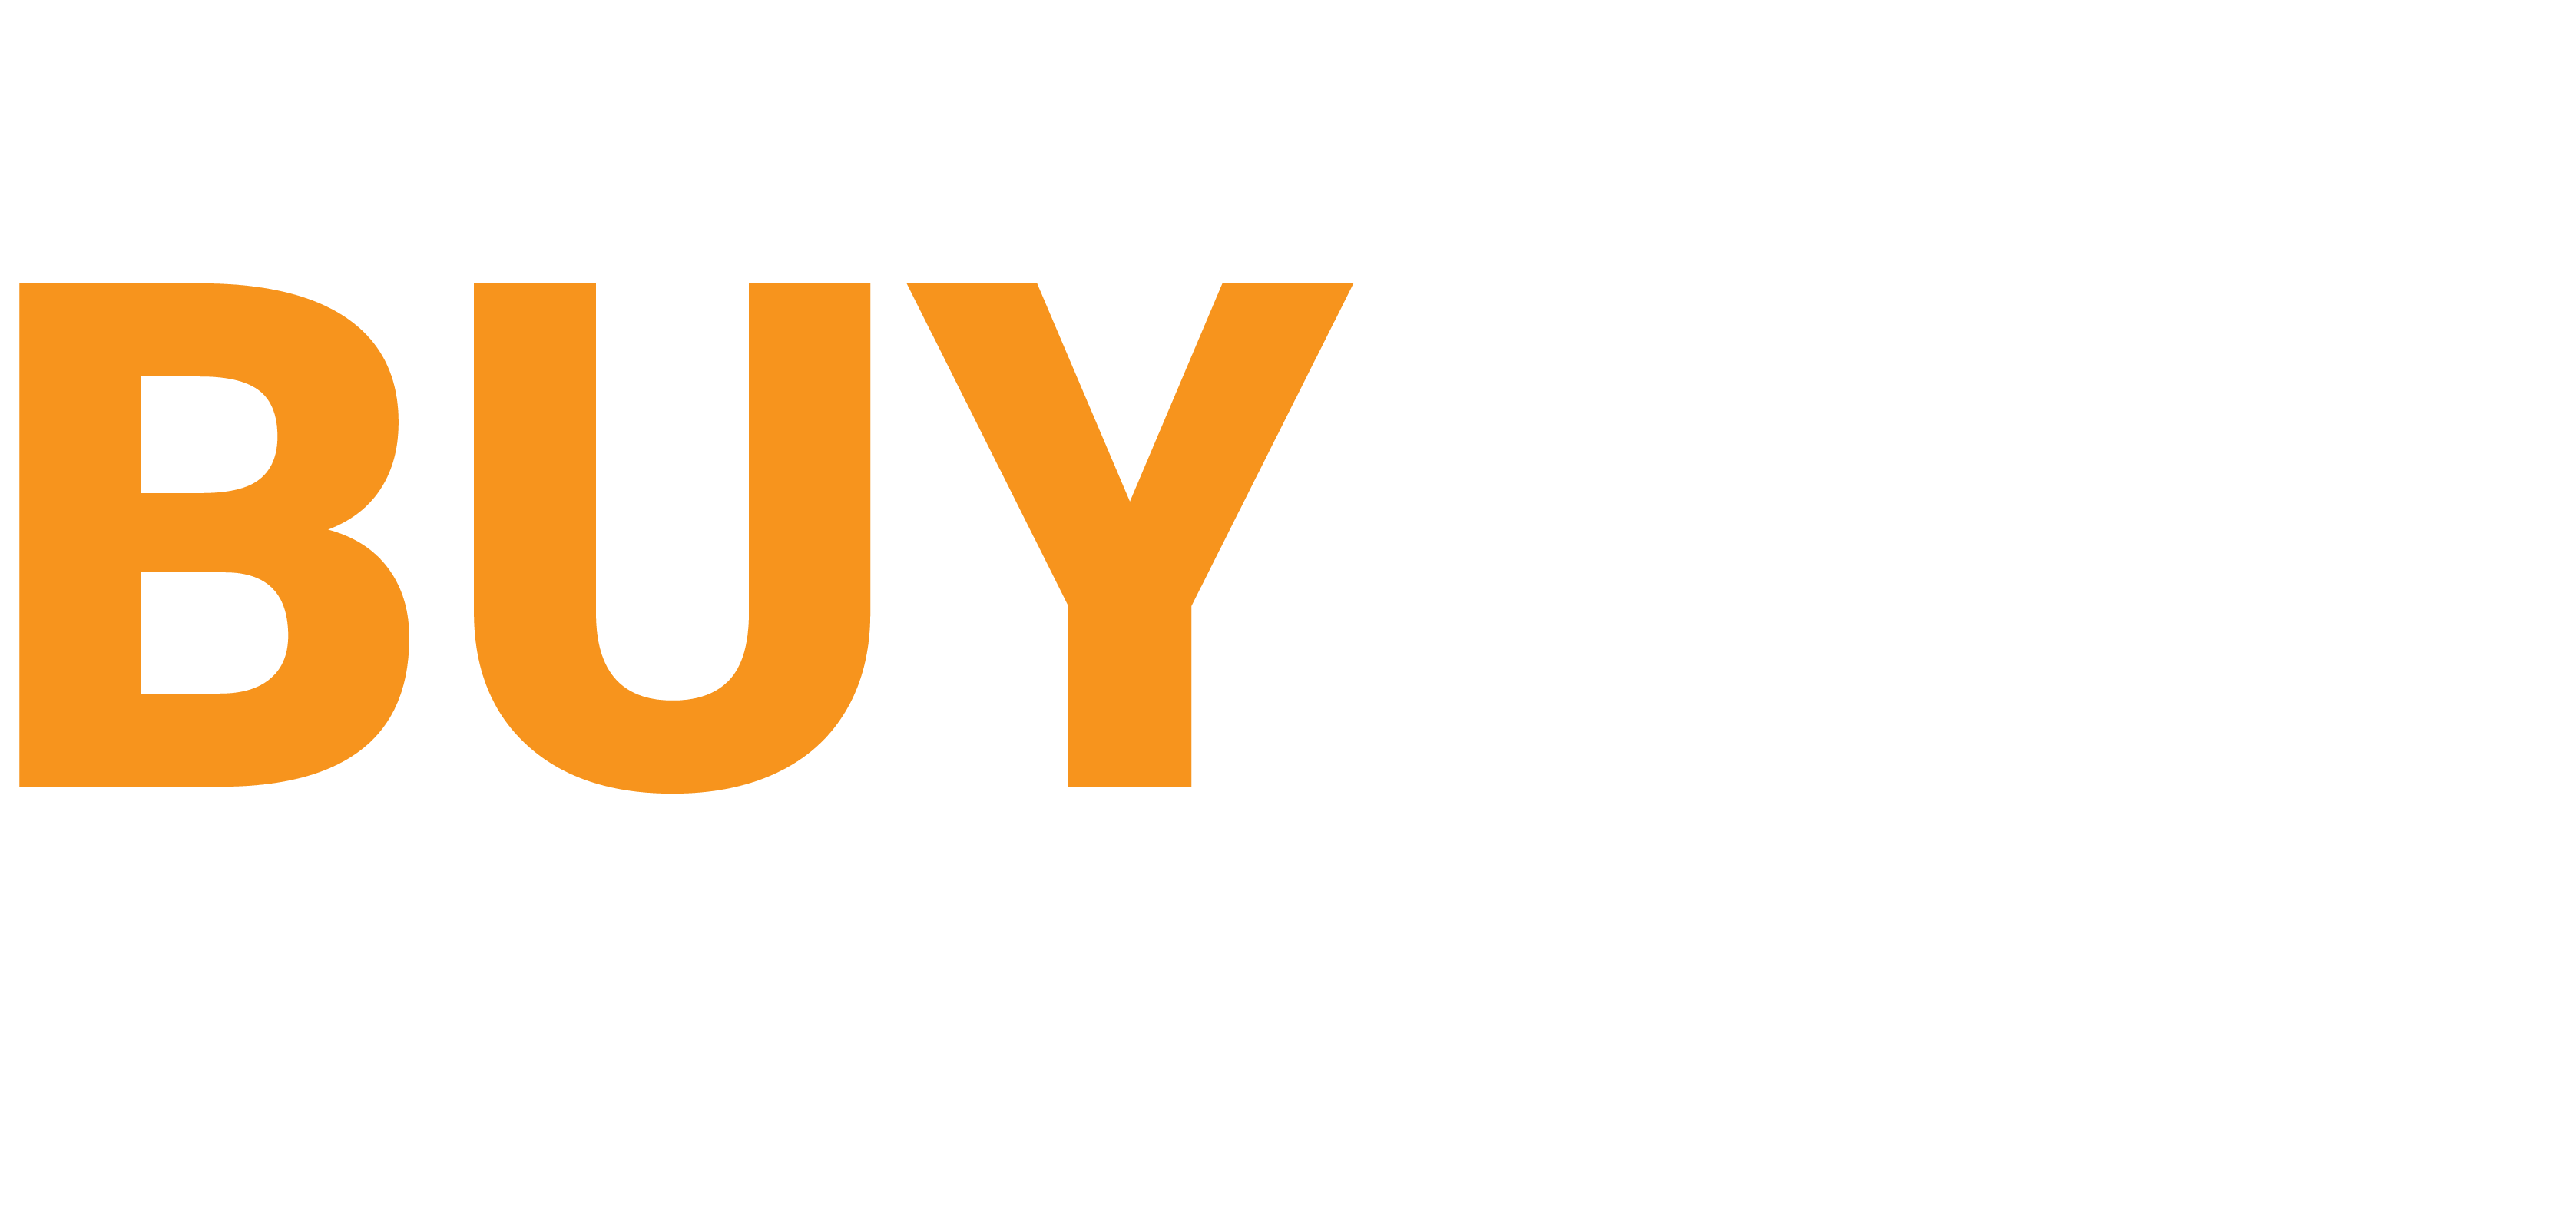 Buy Machinery